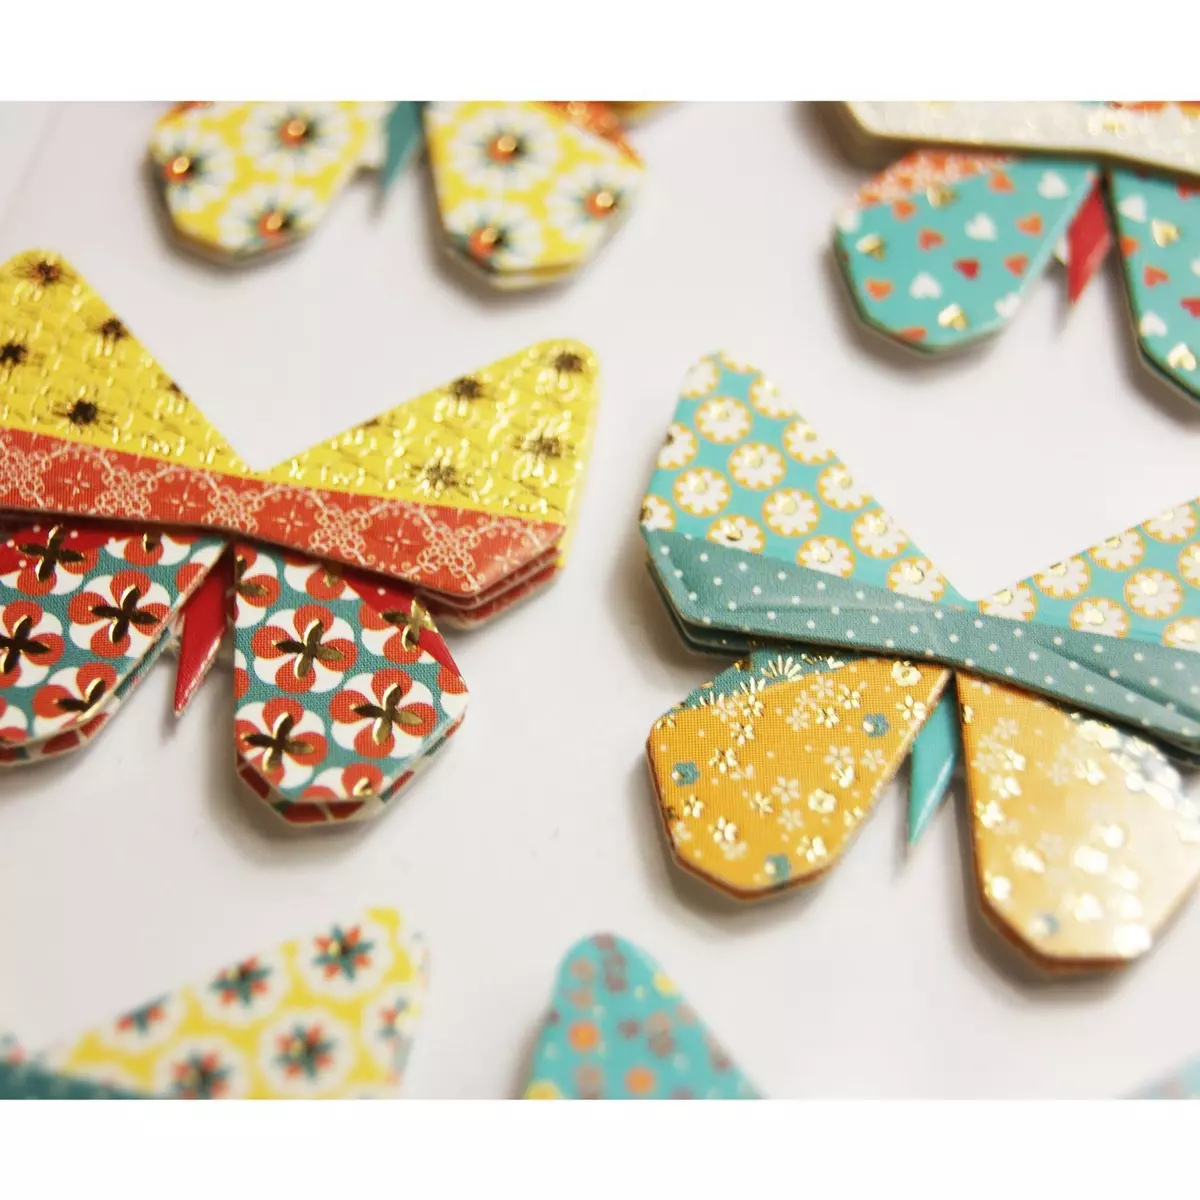  10 Autocollants 3D - Papillons - Origami